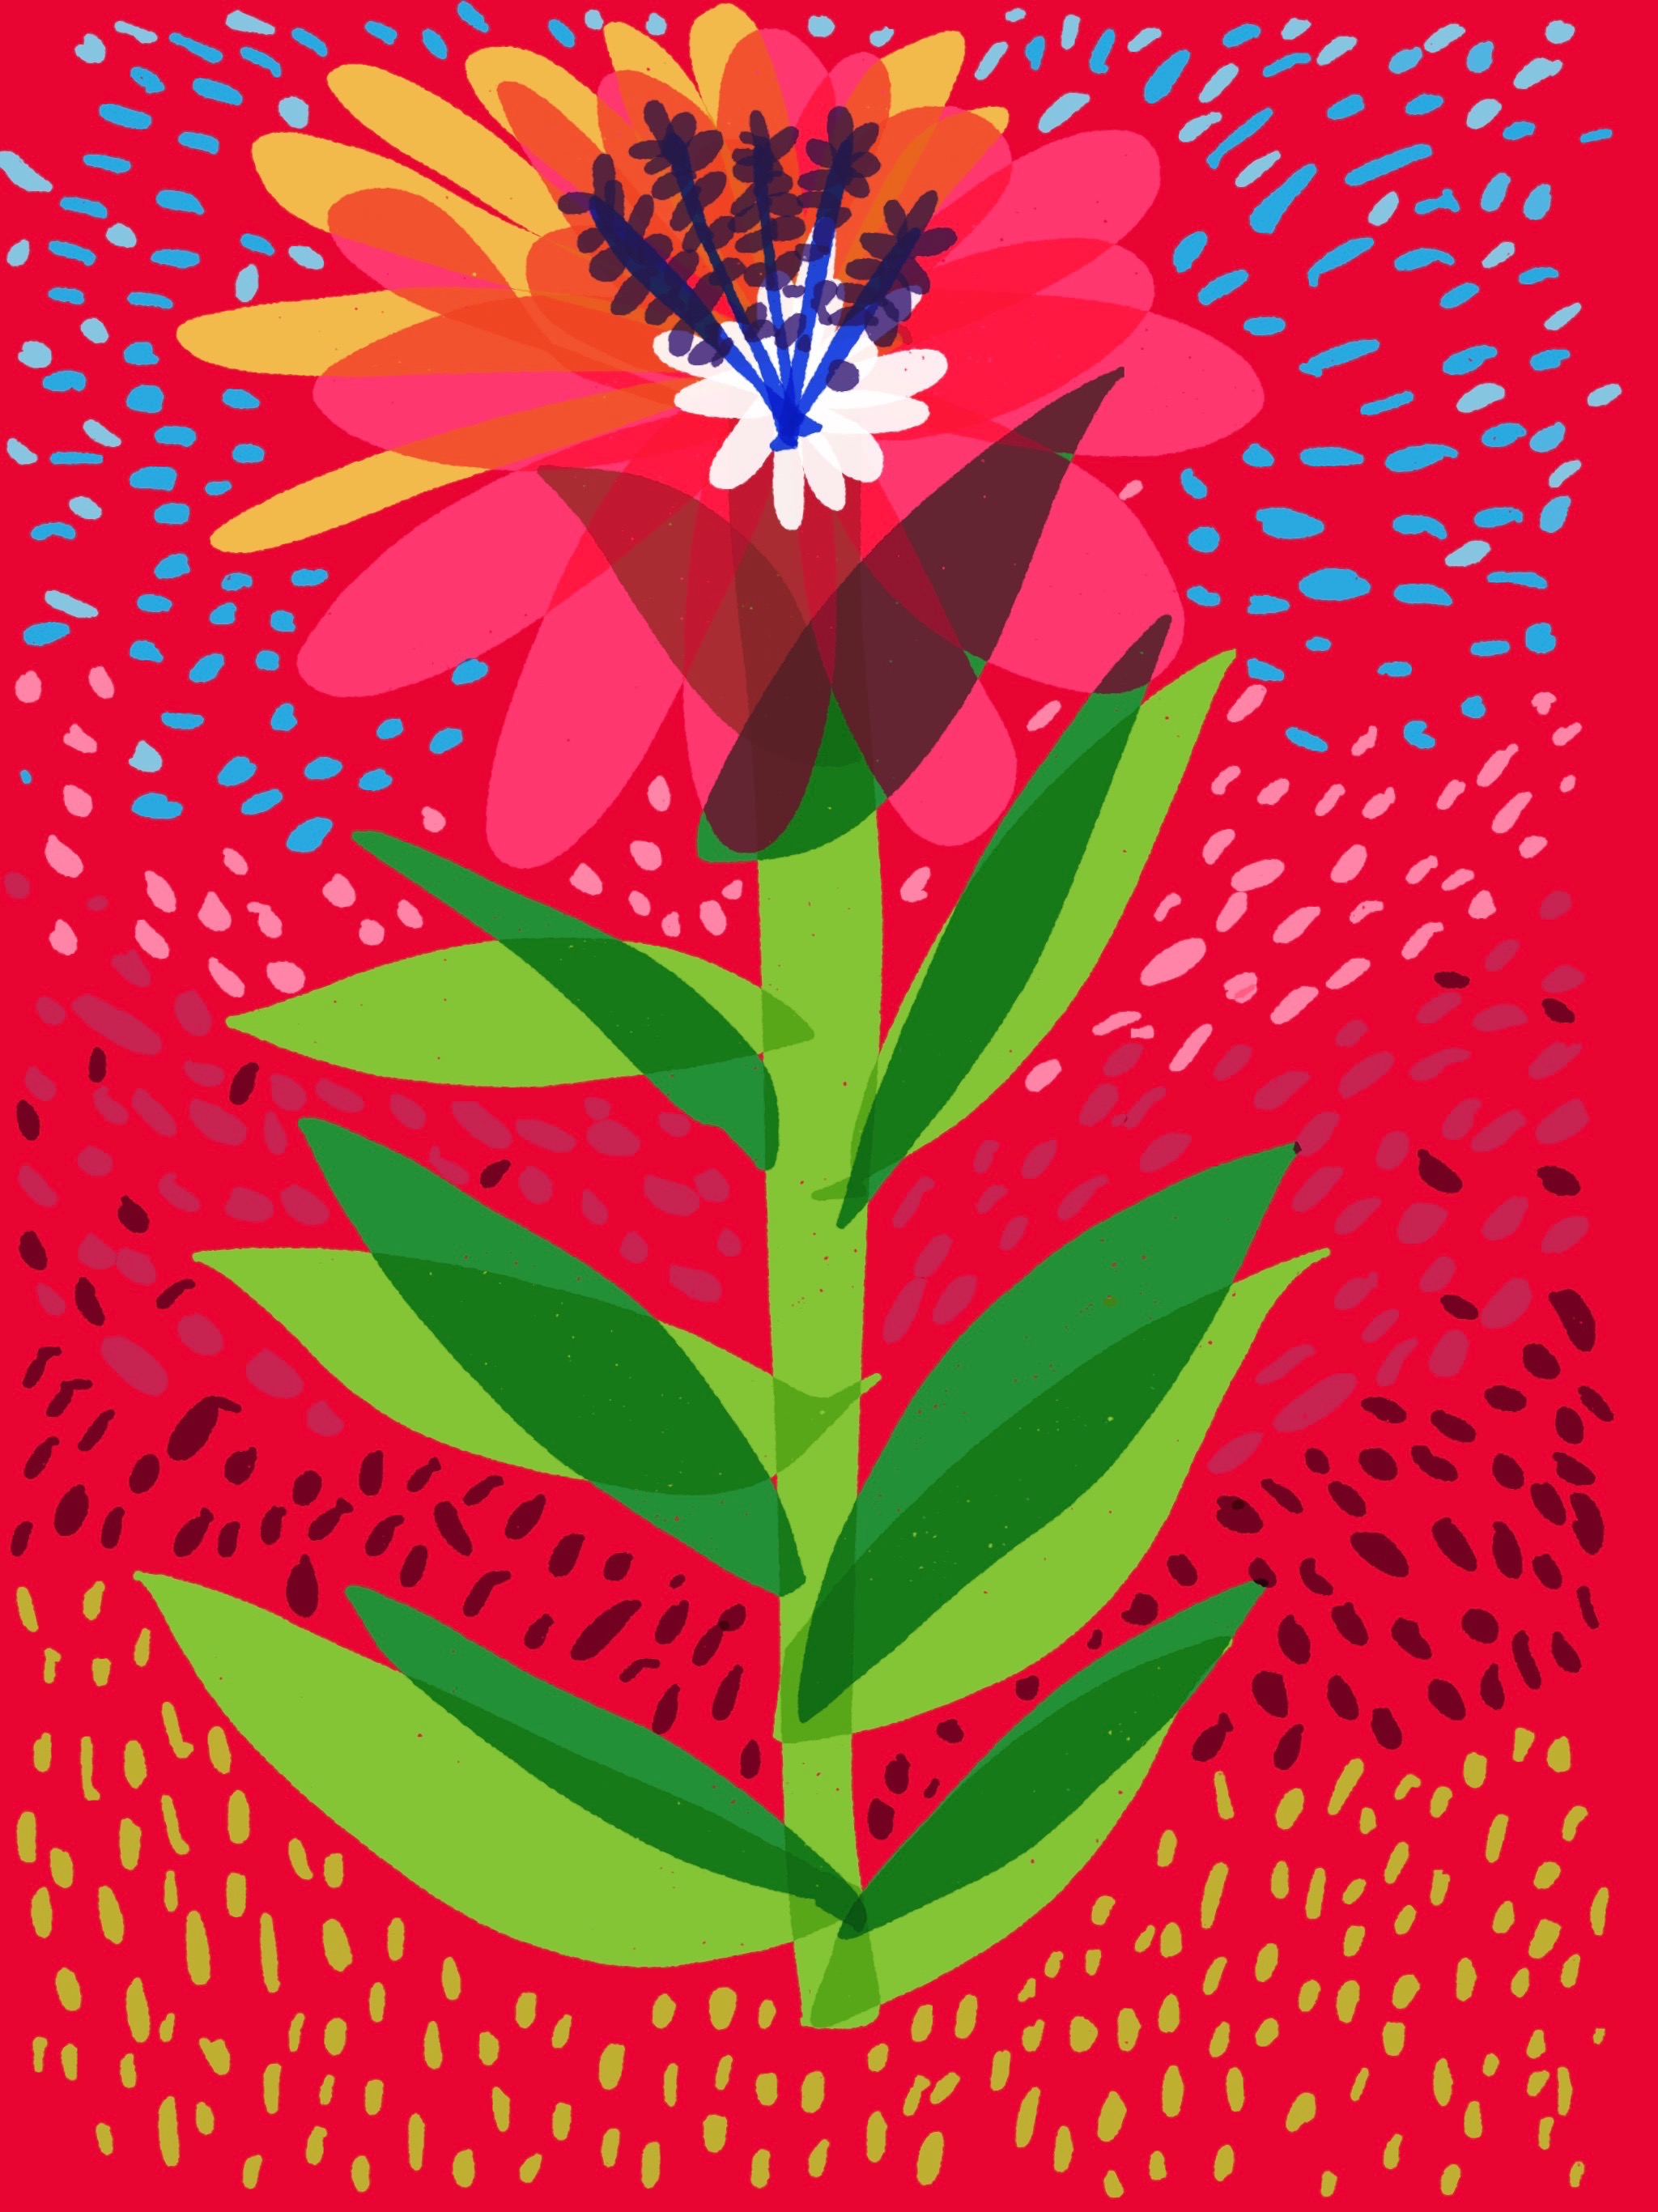 Red Flower Explosion - Razblint